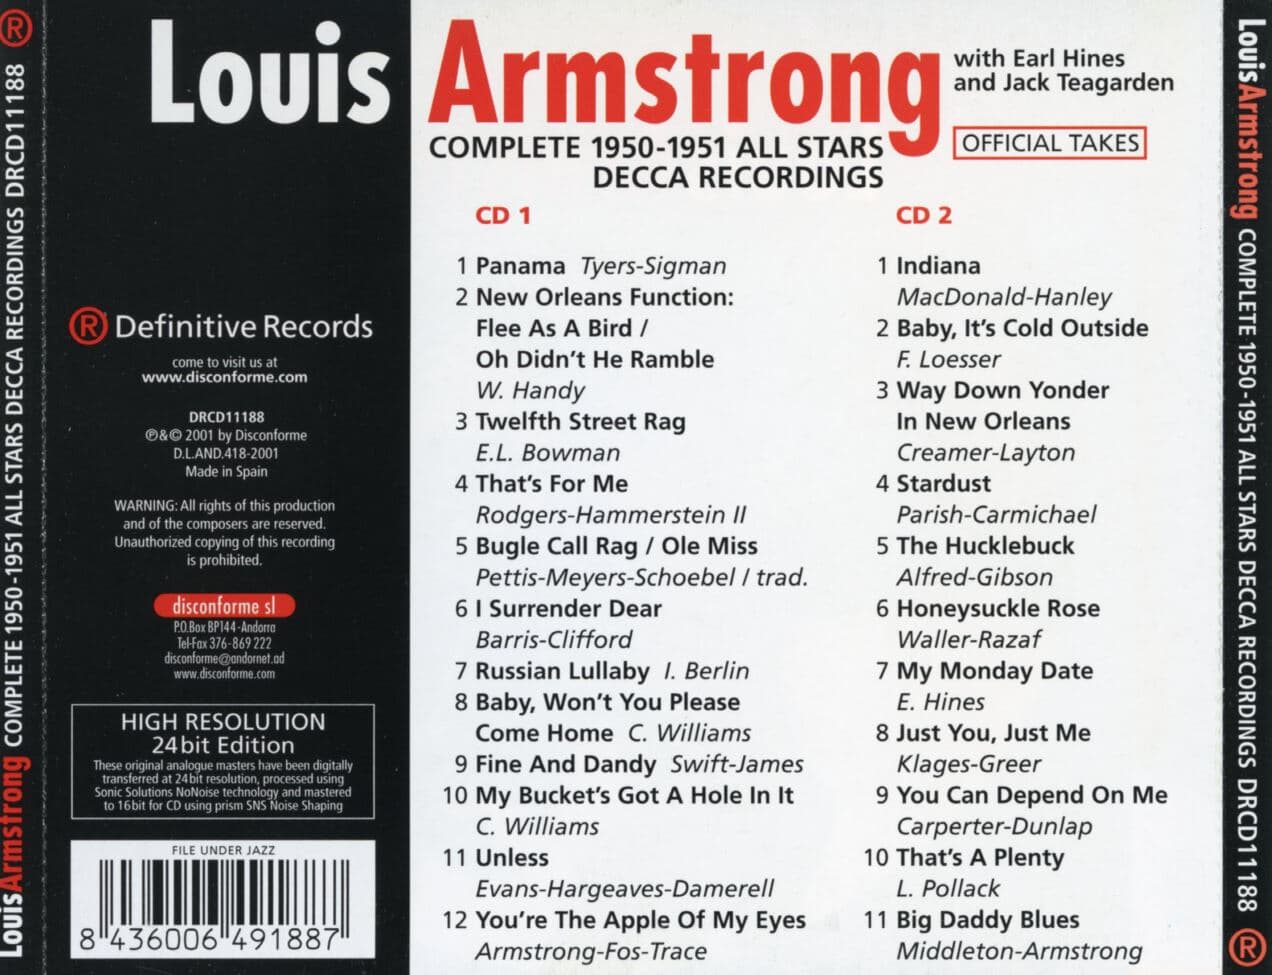 루이 암스트롱 - Louis Armstrong - Complete 1950-1951 All Stars Decca Recordings 2Cds [스폐인발매]